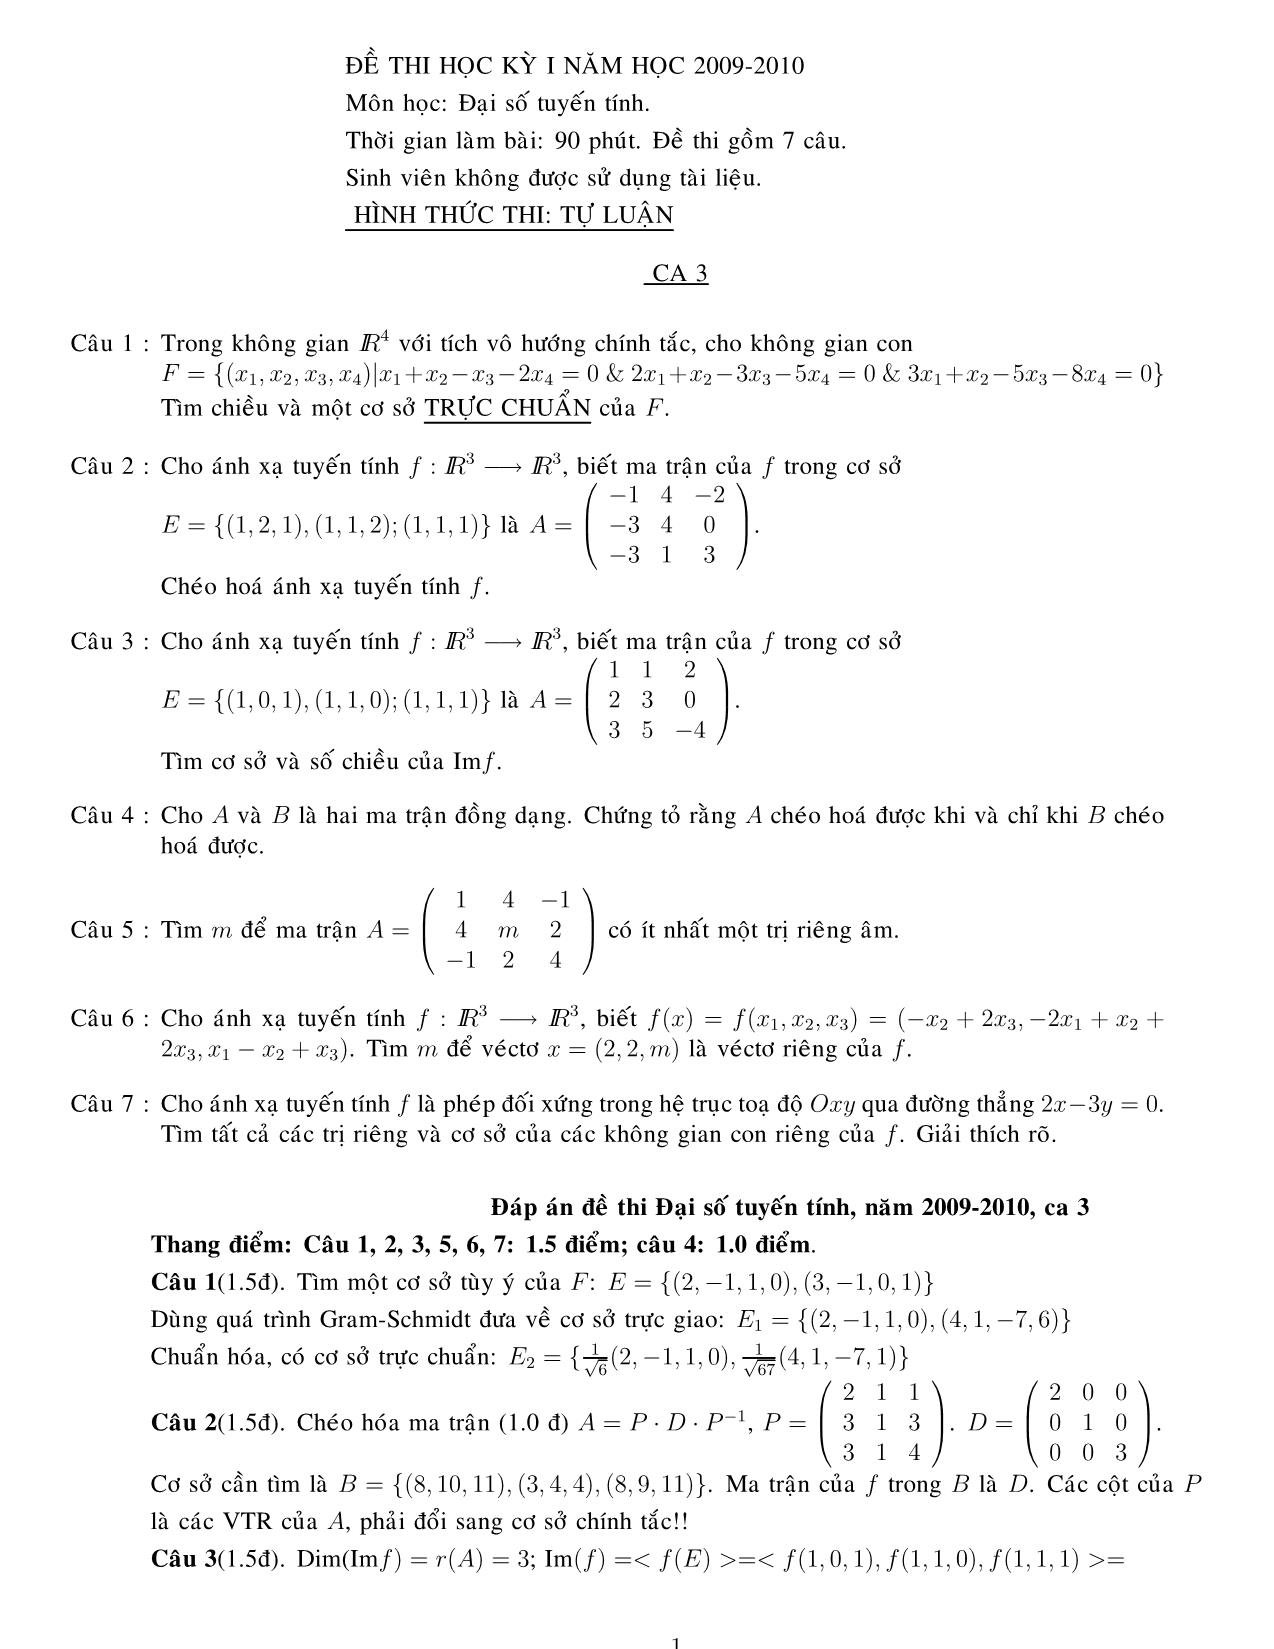 Đề thi học kỳ I môn Đại số tuyến tính - Ca 3 (Có đáp án) trang 1